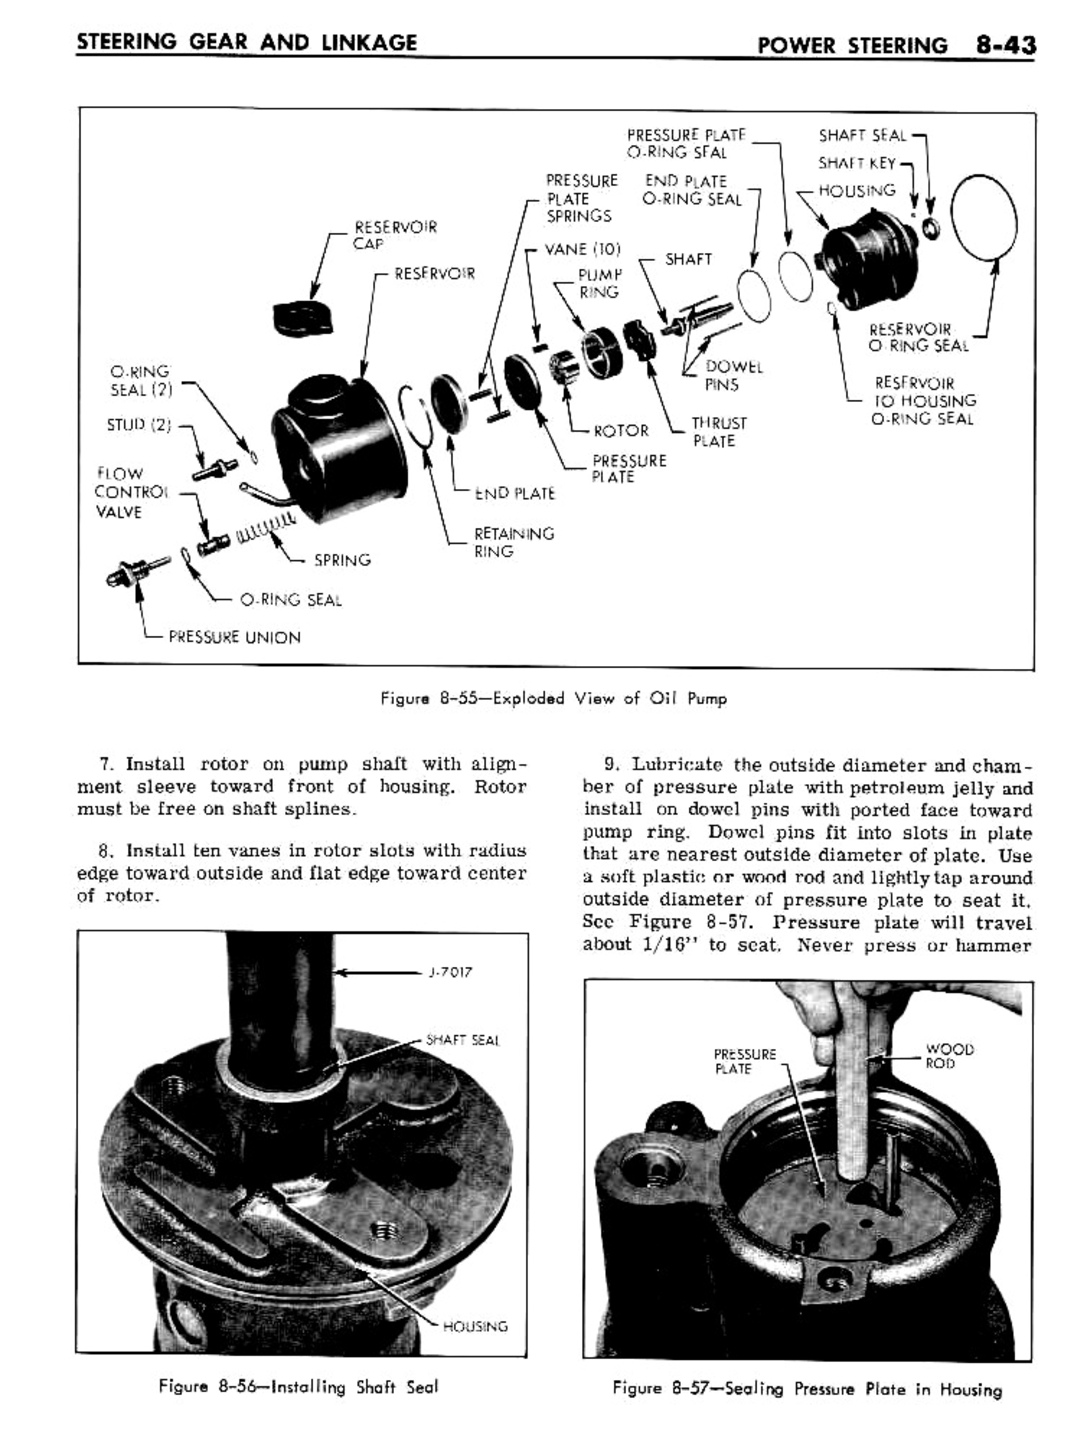 n_08 1961 Buick Shop Manual - Steering-043-043.jpg